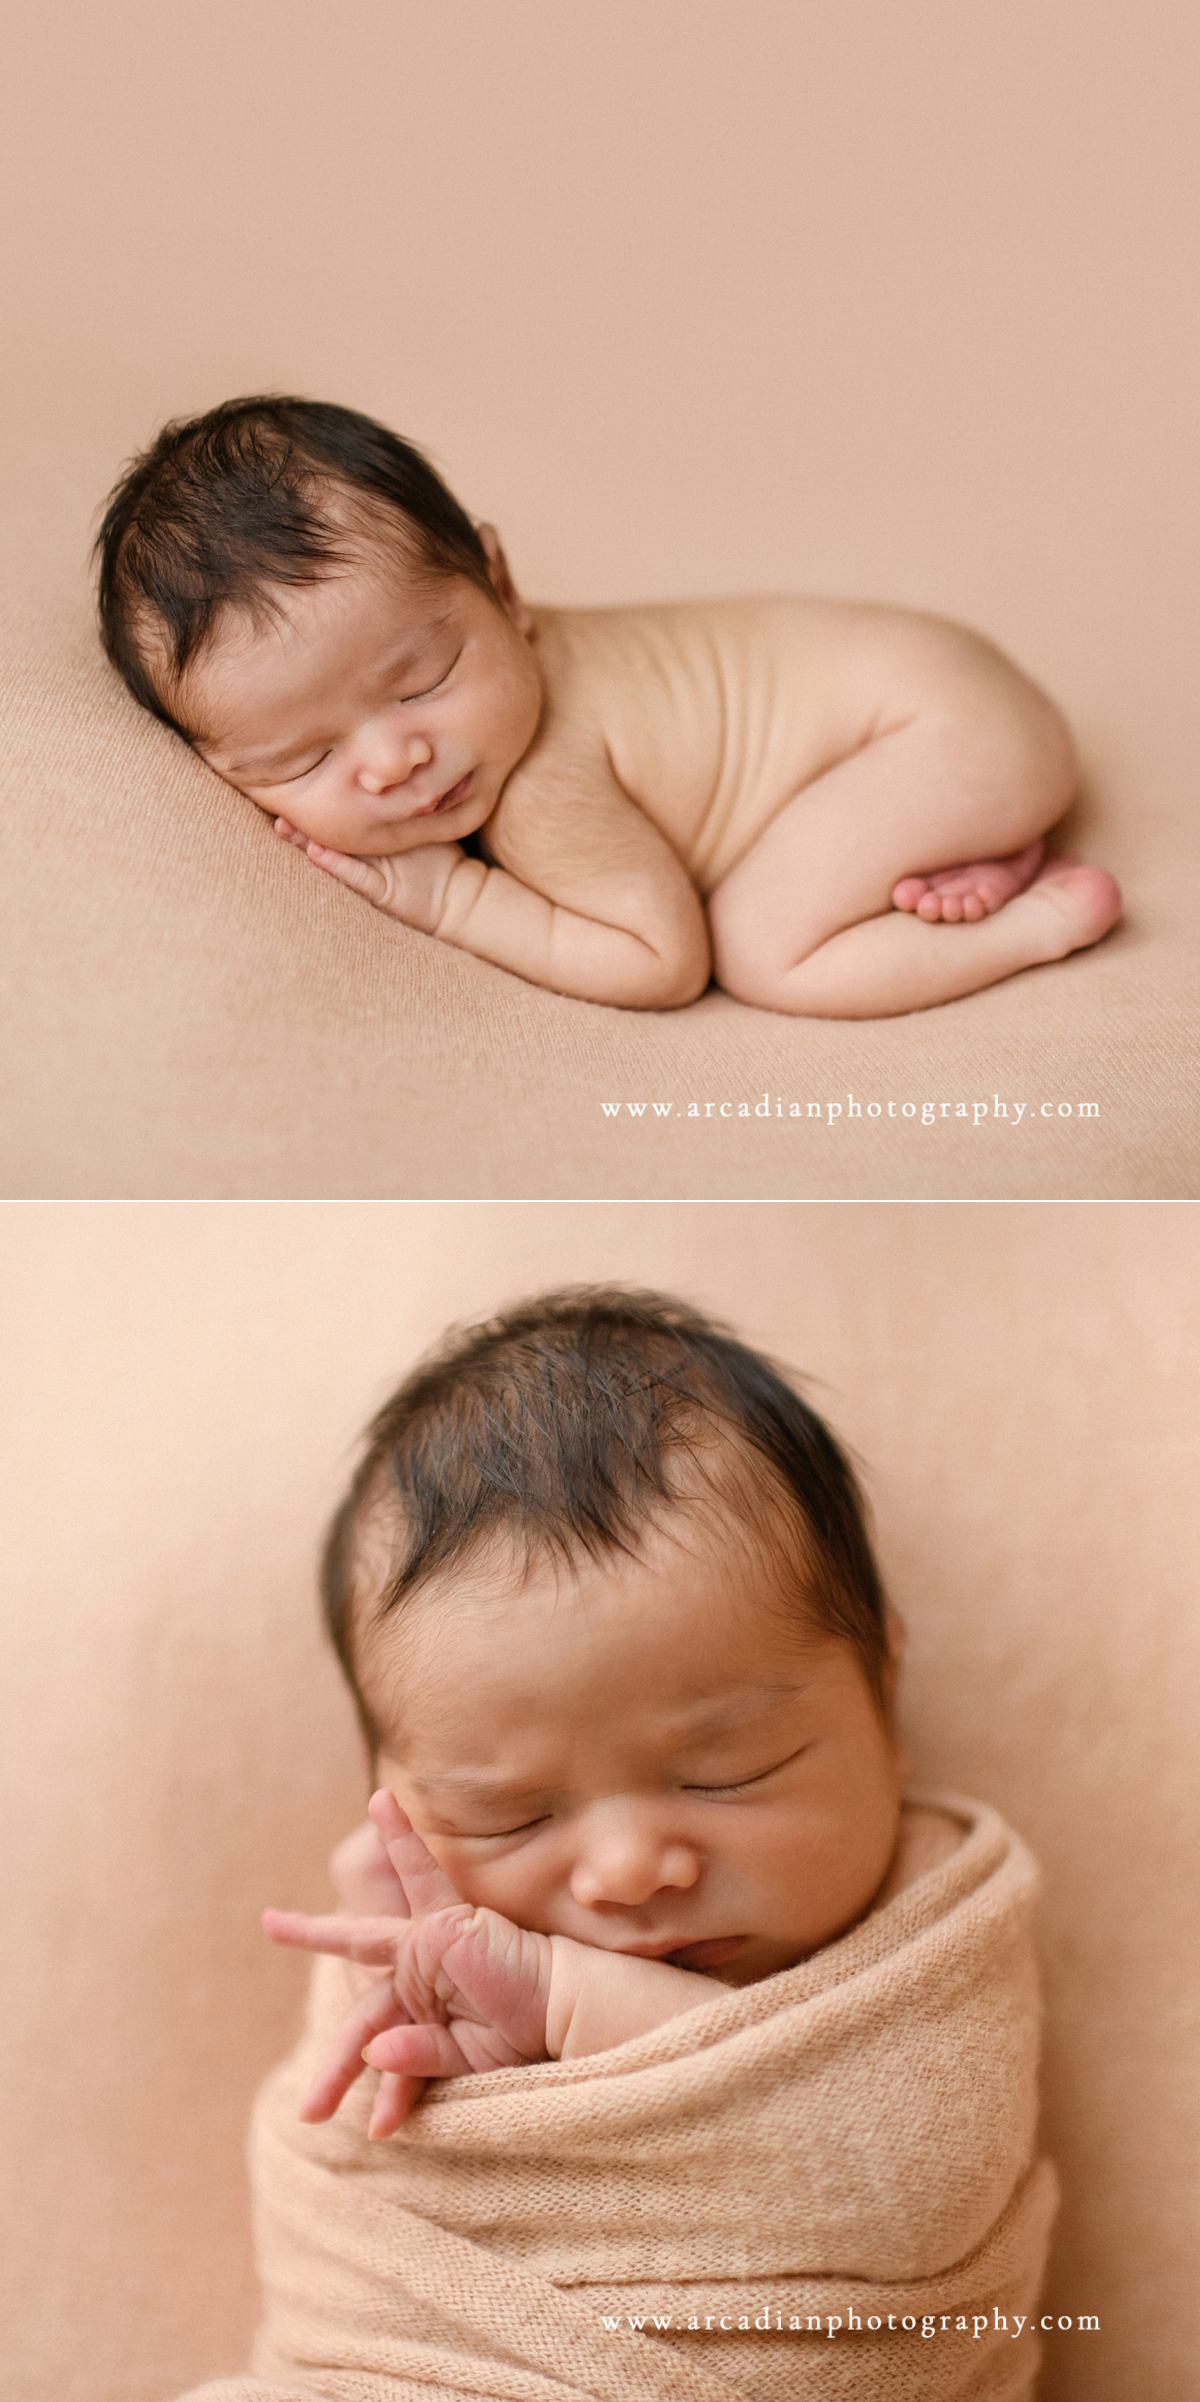 Newborn photos of brand new baby girl.